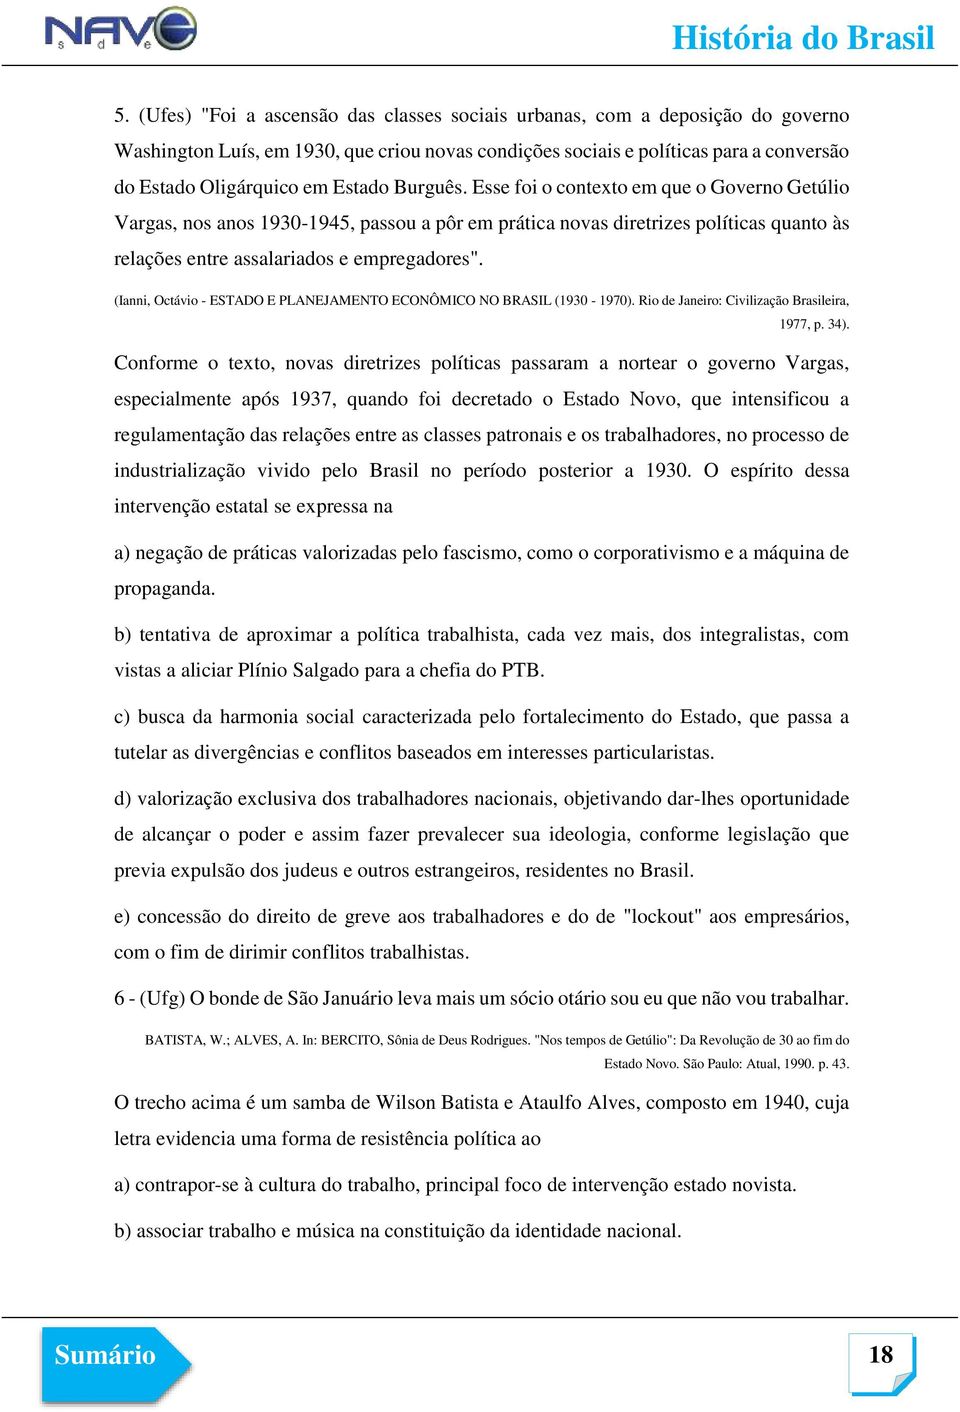 (Ianni, Octávio - ESTADO E PLANEJAMENTO ECONÔMICO NO BRASIL (1930-1970). Rio de Janeiro: Civilização Brasileira, 1977, p. 34).